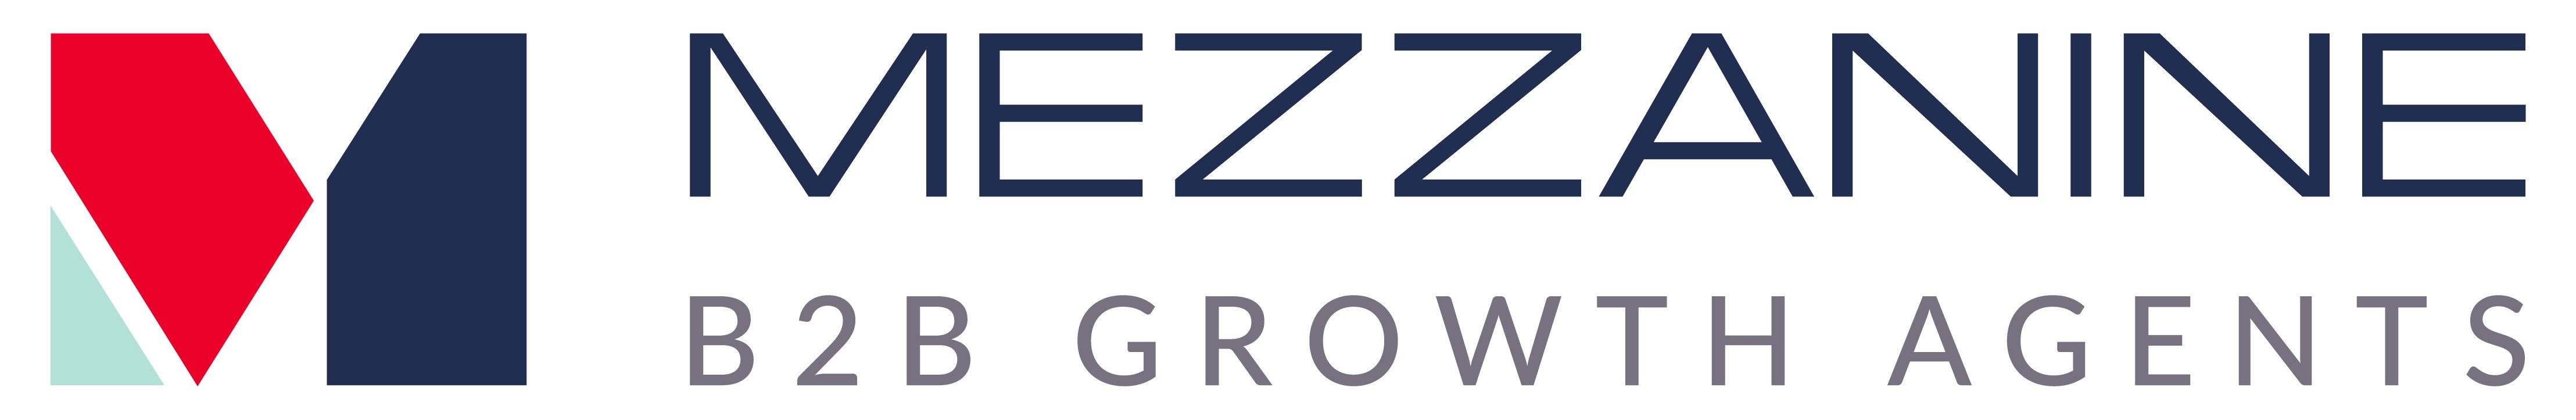 Mezzanine B2B Growth Agents